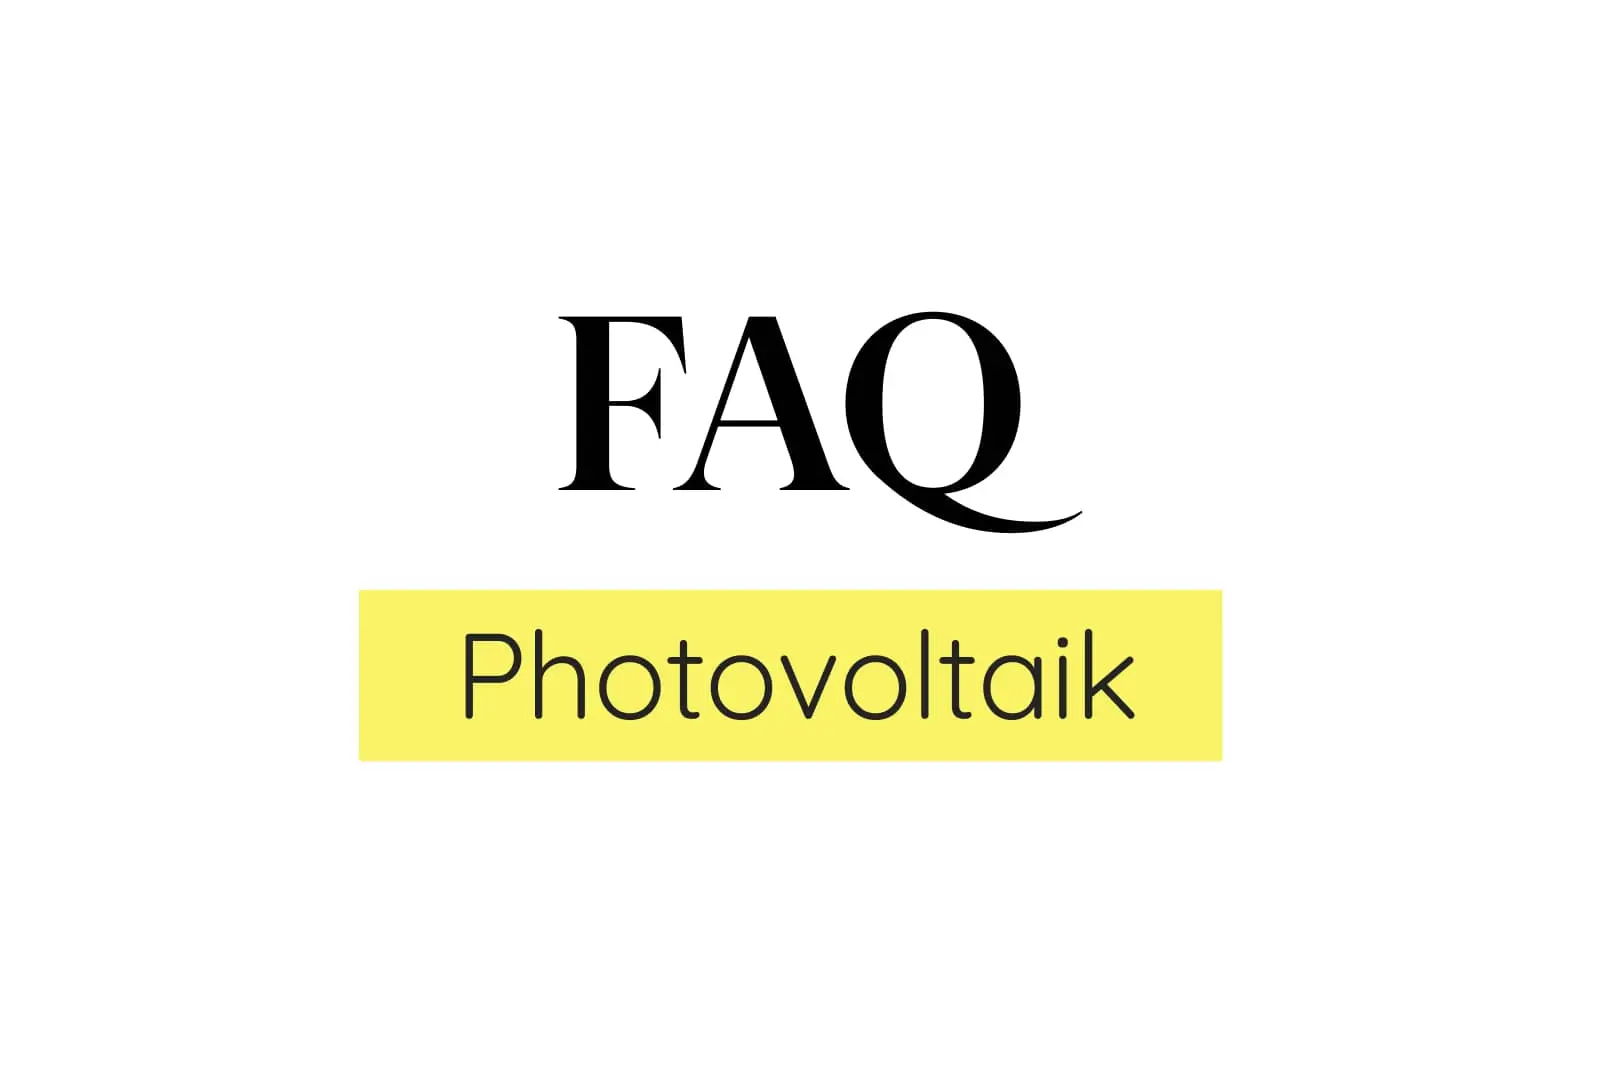 FAQ Photovoltaik: Profi-Antworten auf Ihre Fragen